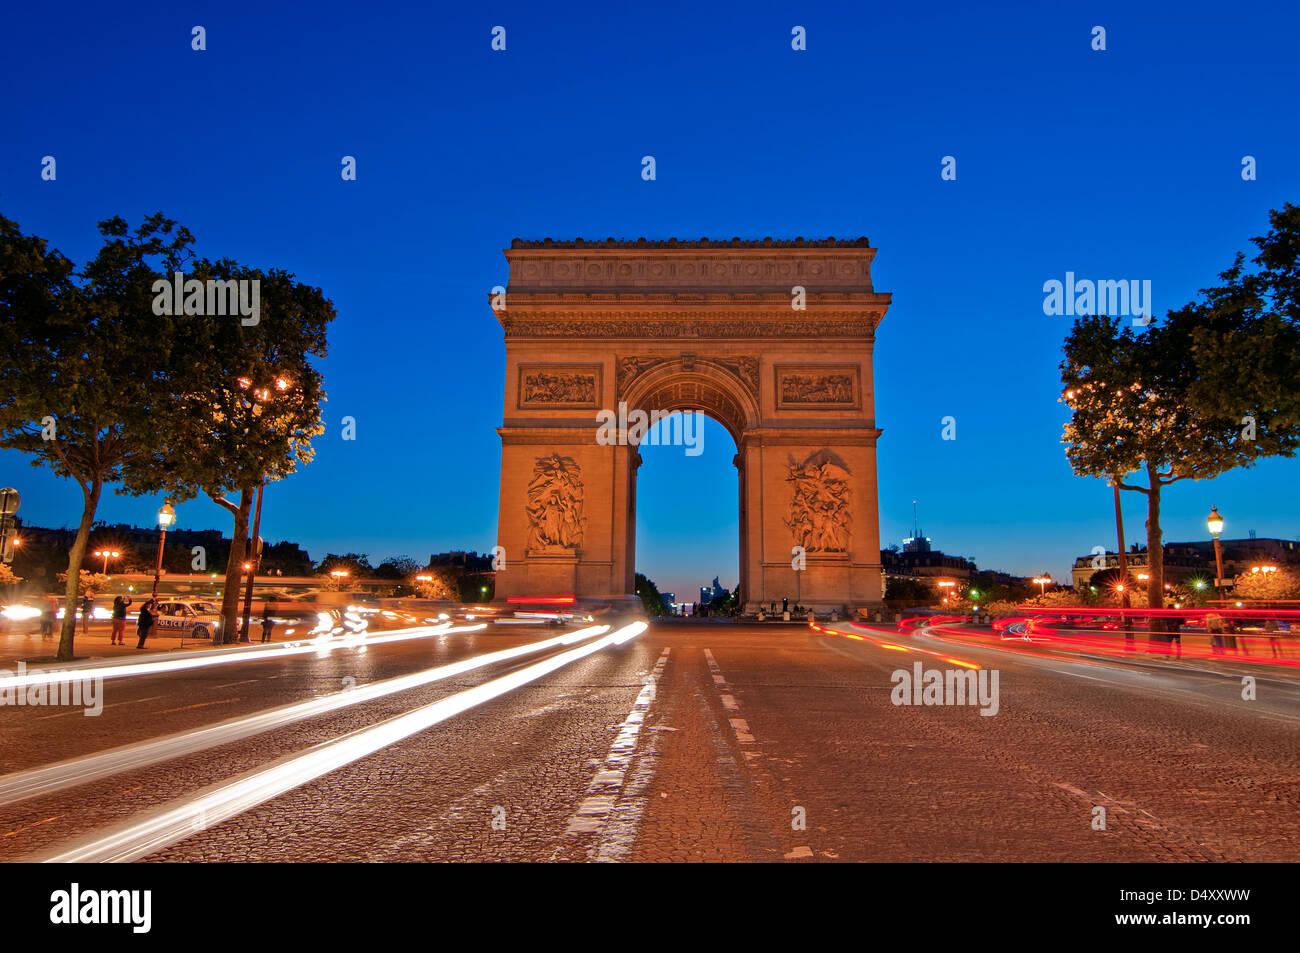 Imagen de rastro de luz en la parte frontal del histórico Arco de Triunfo por la noche en París, Francia. Foto de stock